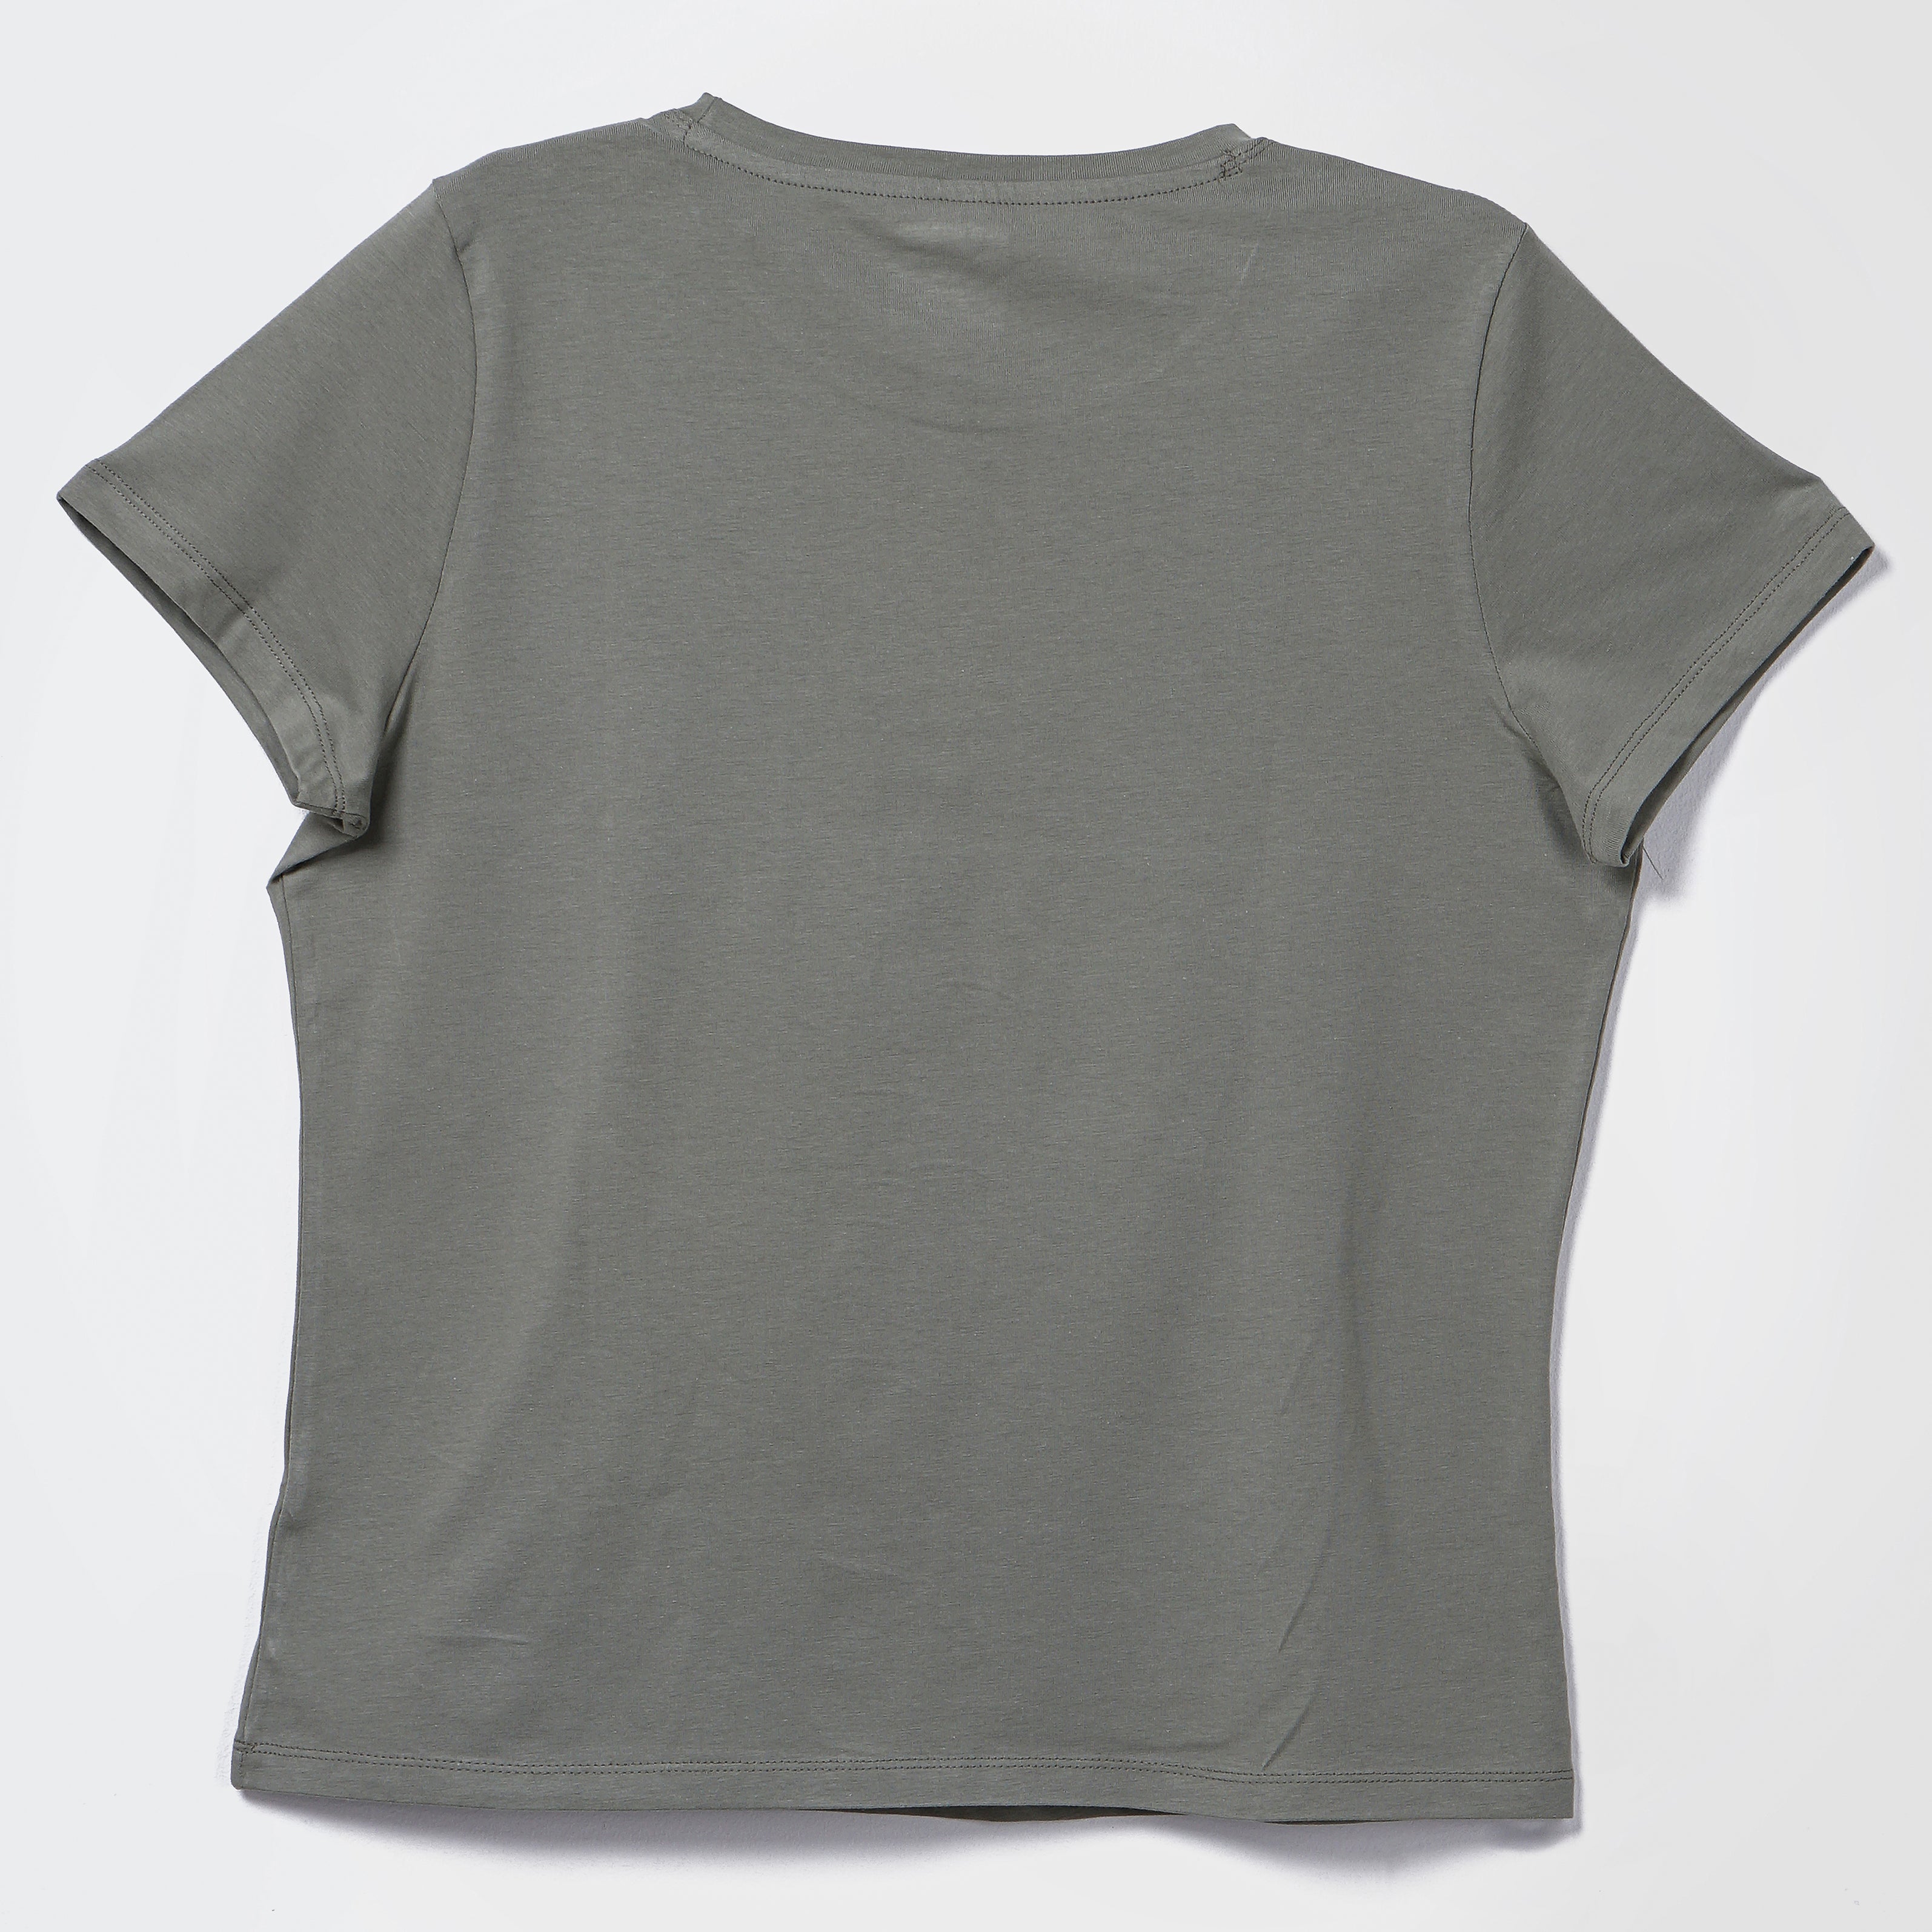 Calvin Klein Round Neck Green T-Shirt - Marca Deals - Calvin Klein